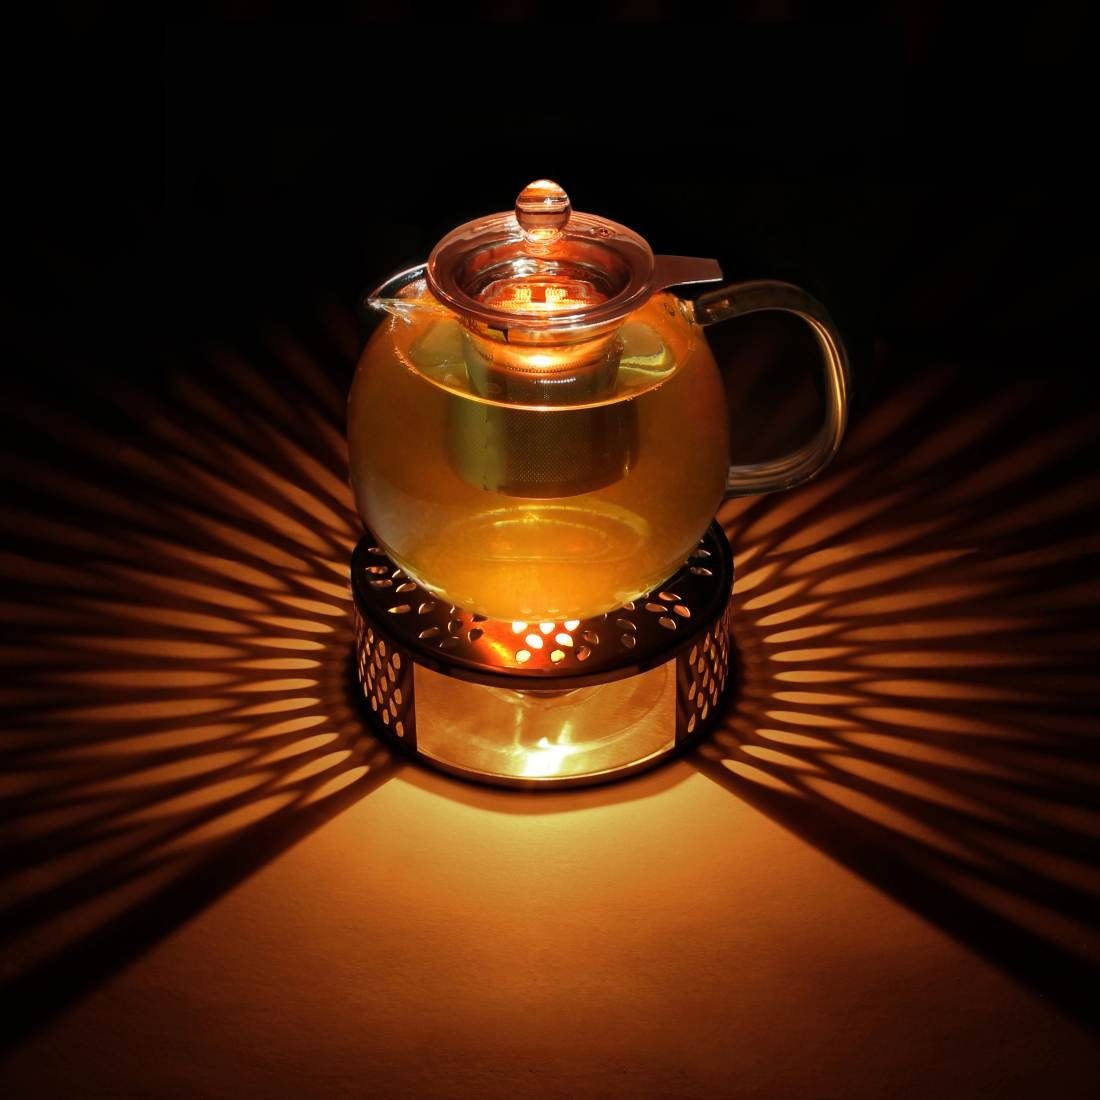 Stövchen Creano Creano + aus 3-teilige, 1,3l ein Teekanne Teekanne (Set) aus Glas Edelstahl,